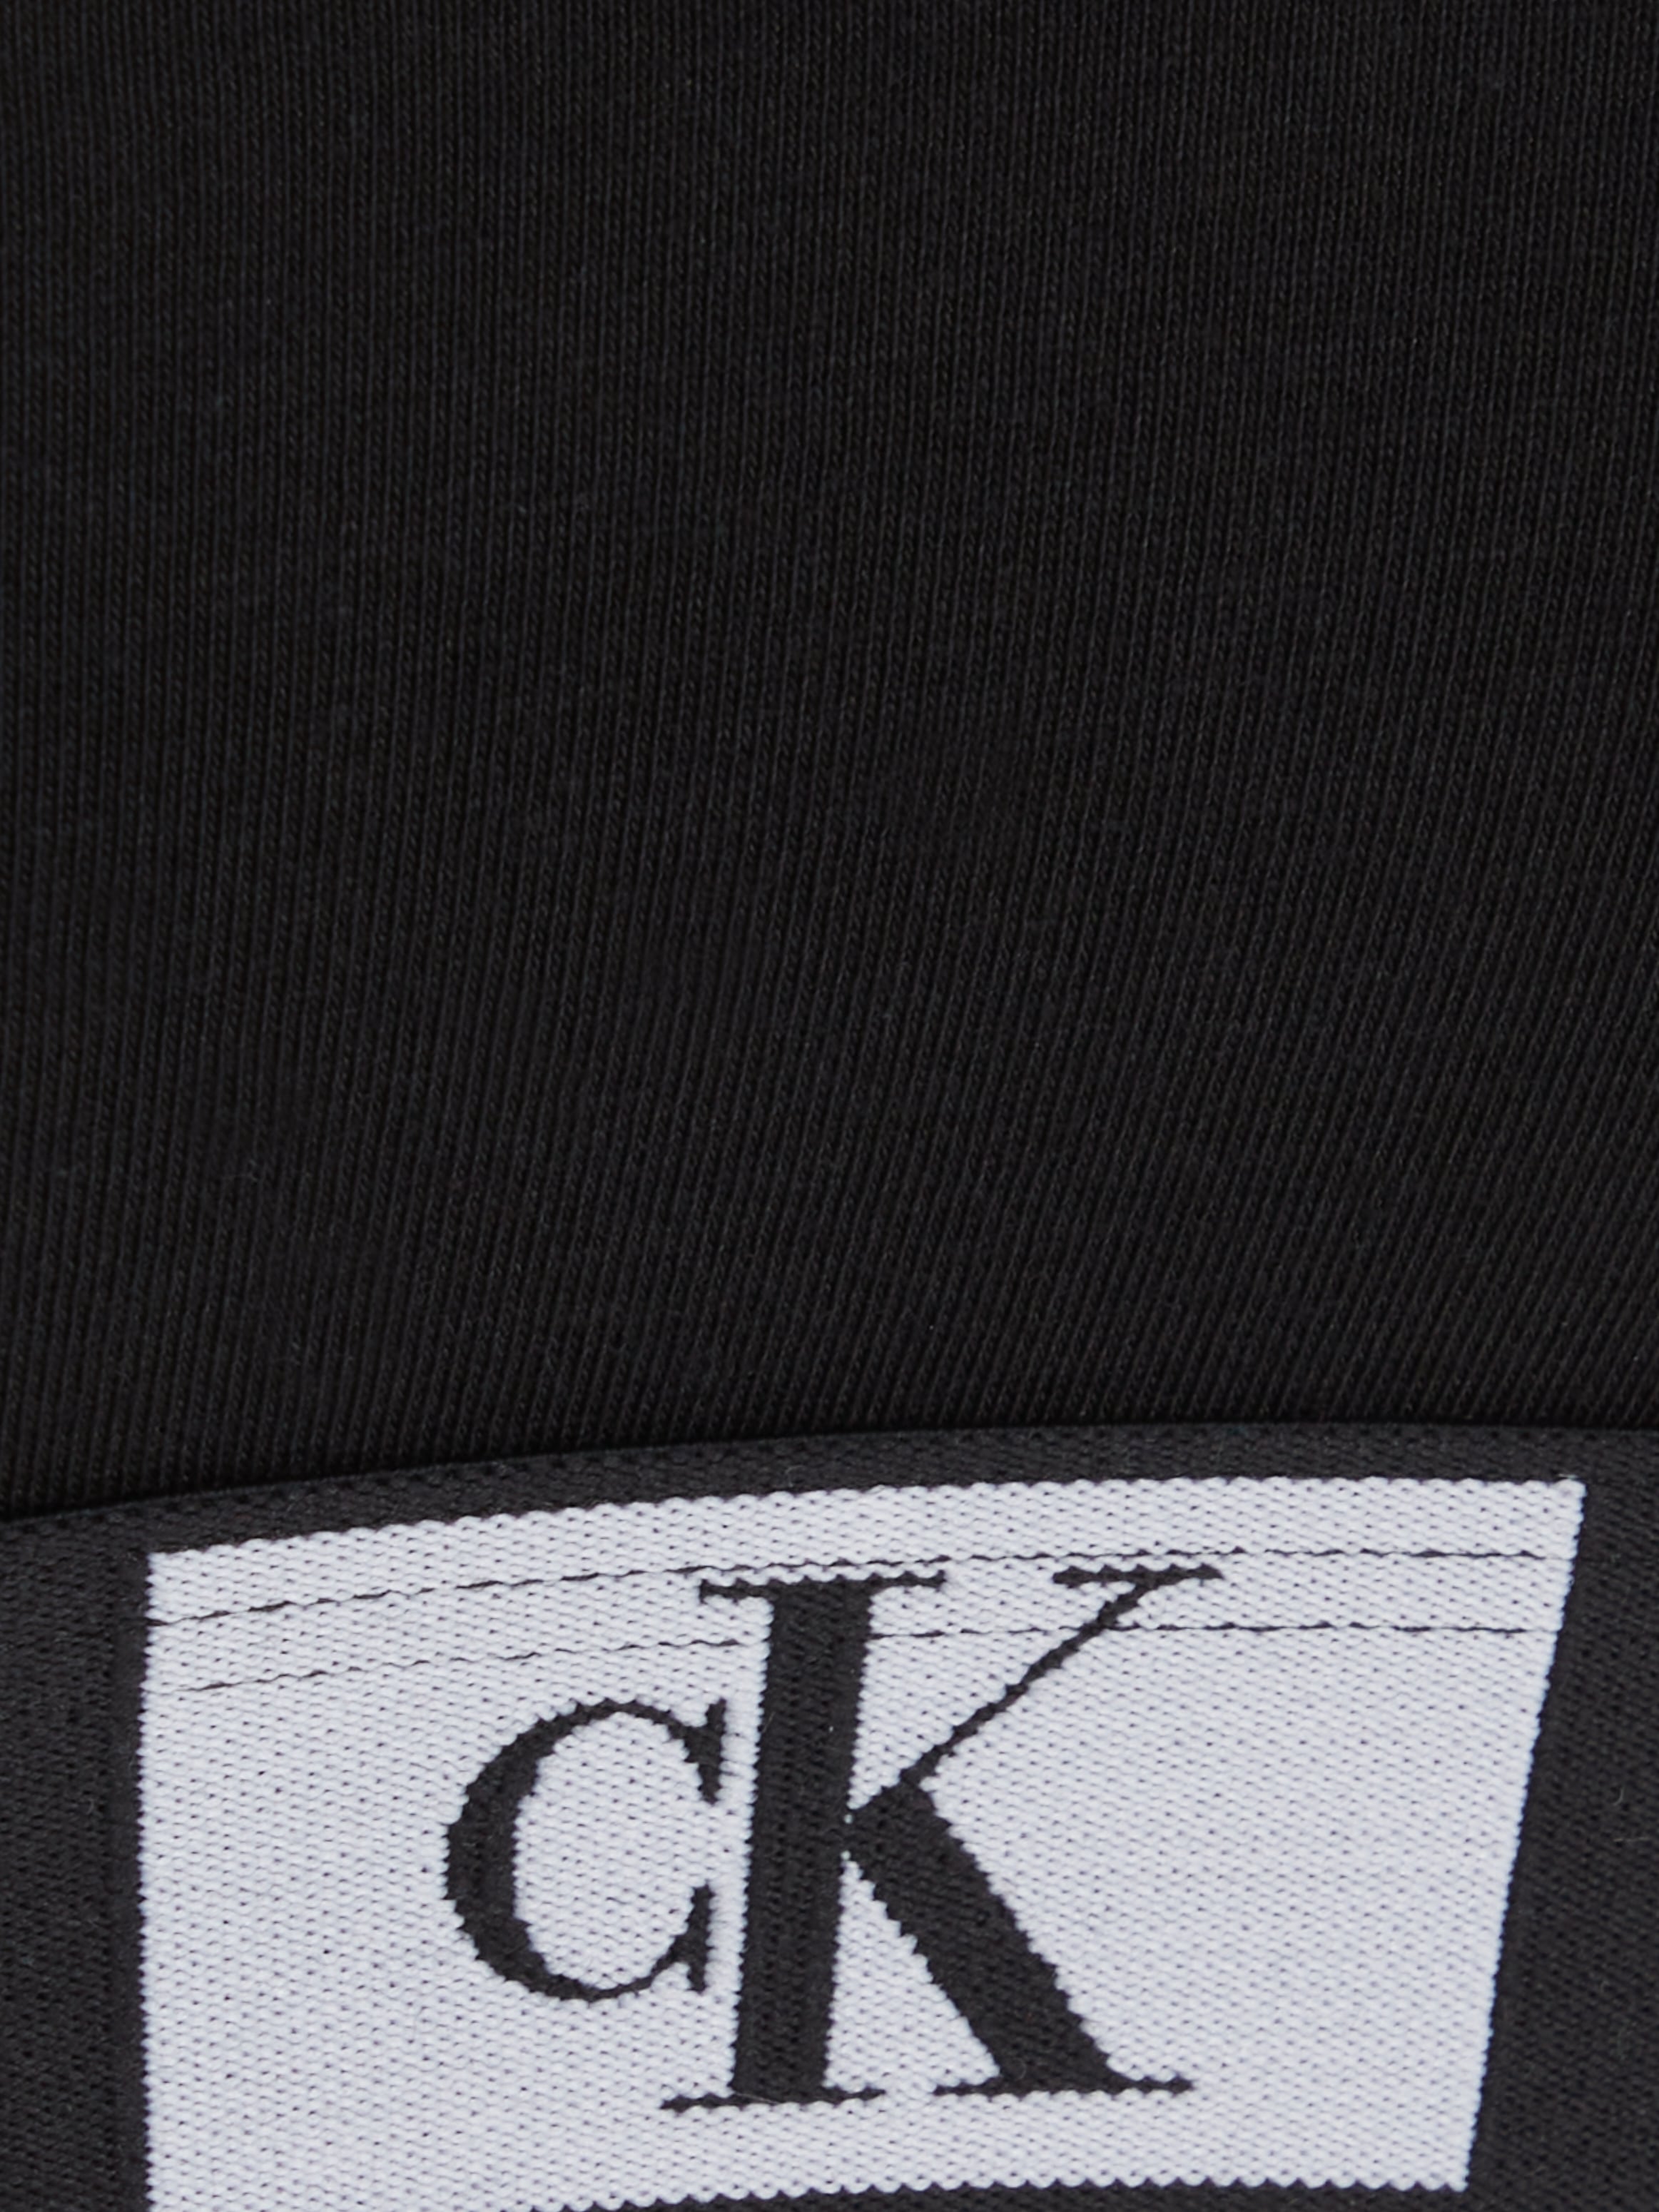 Calvin Klein Underwear Bralette »UNLINED BRALETTE«, mit klassischem CK-Logobund